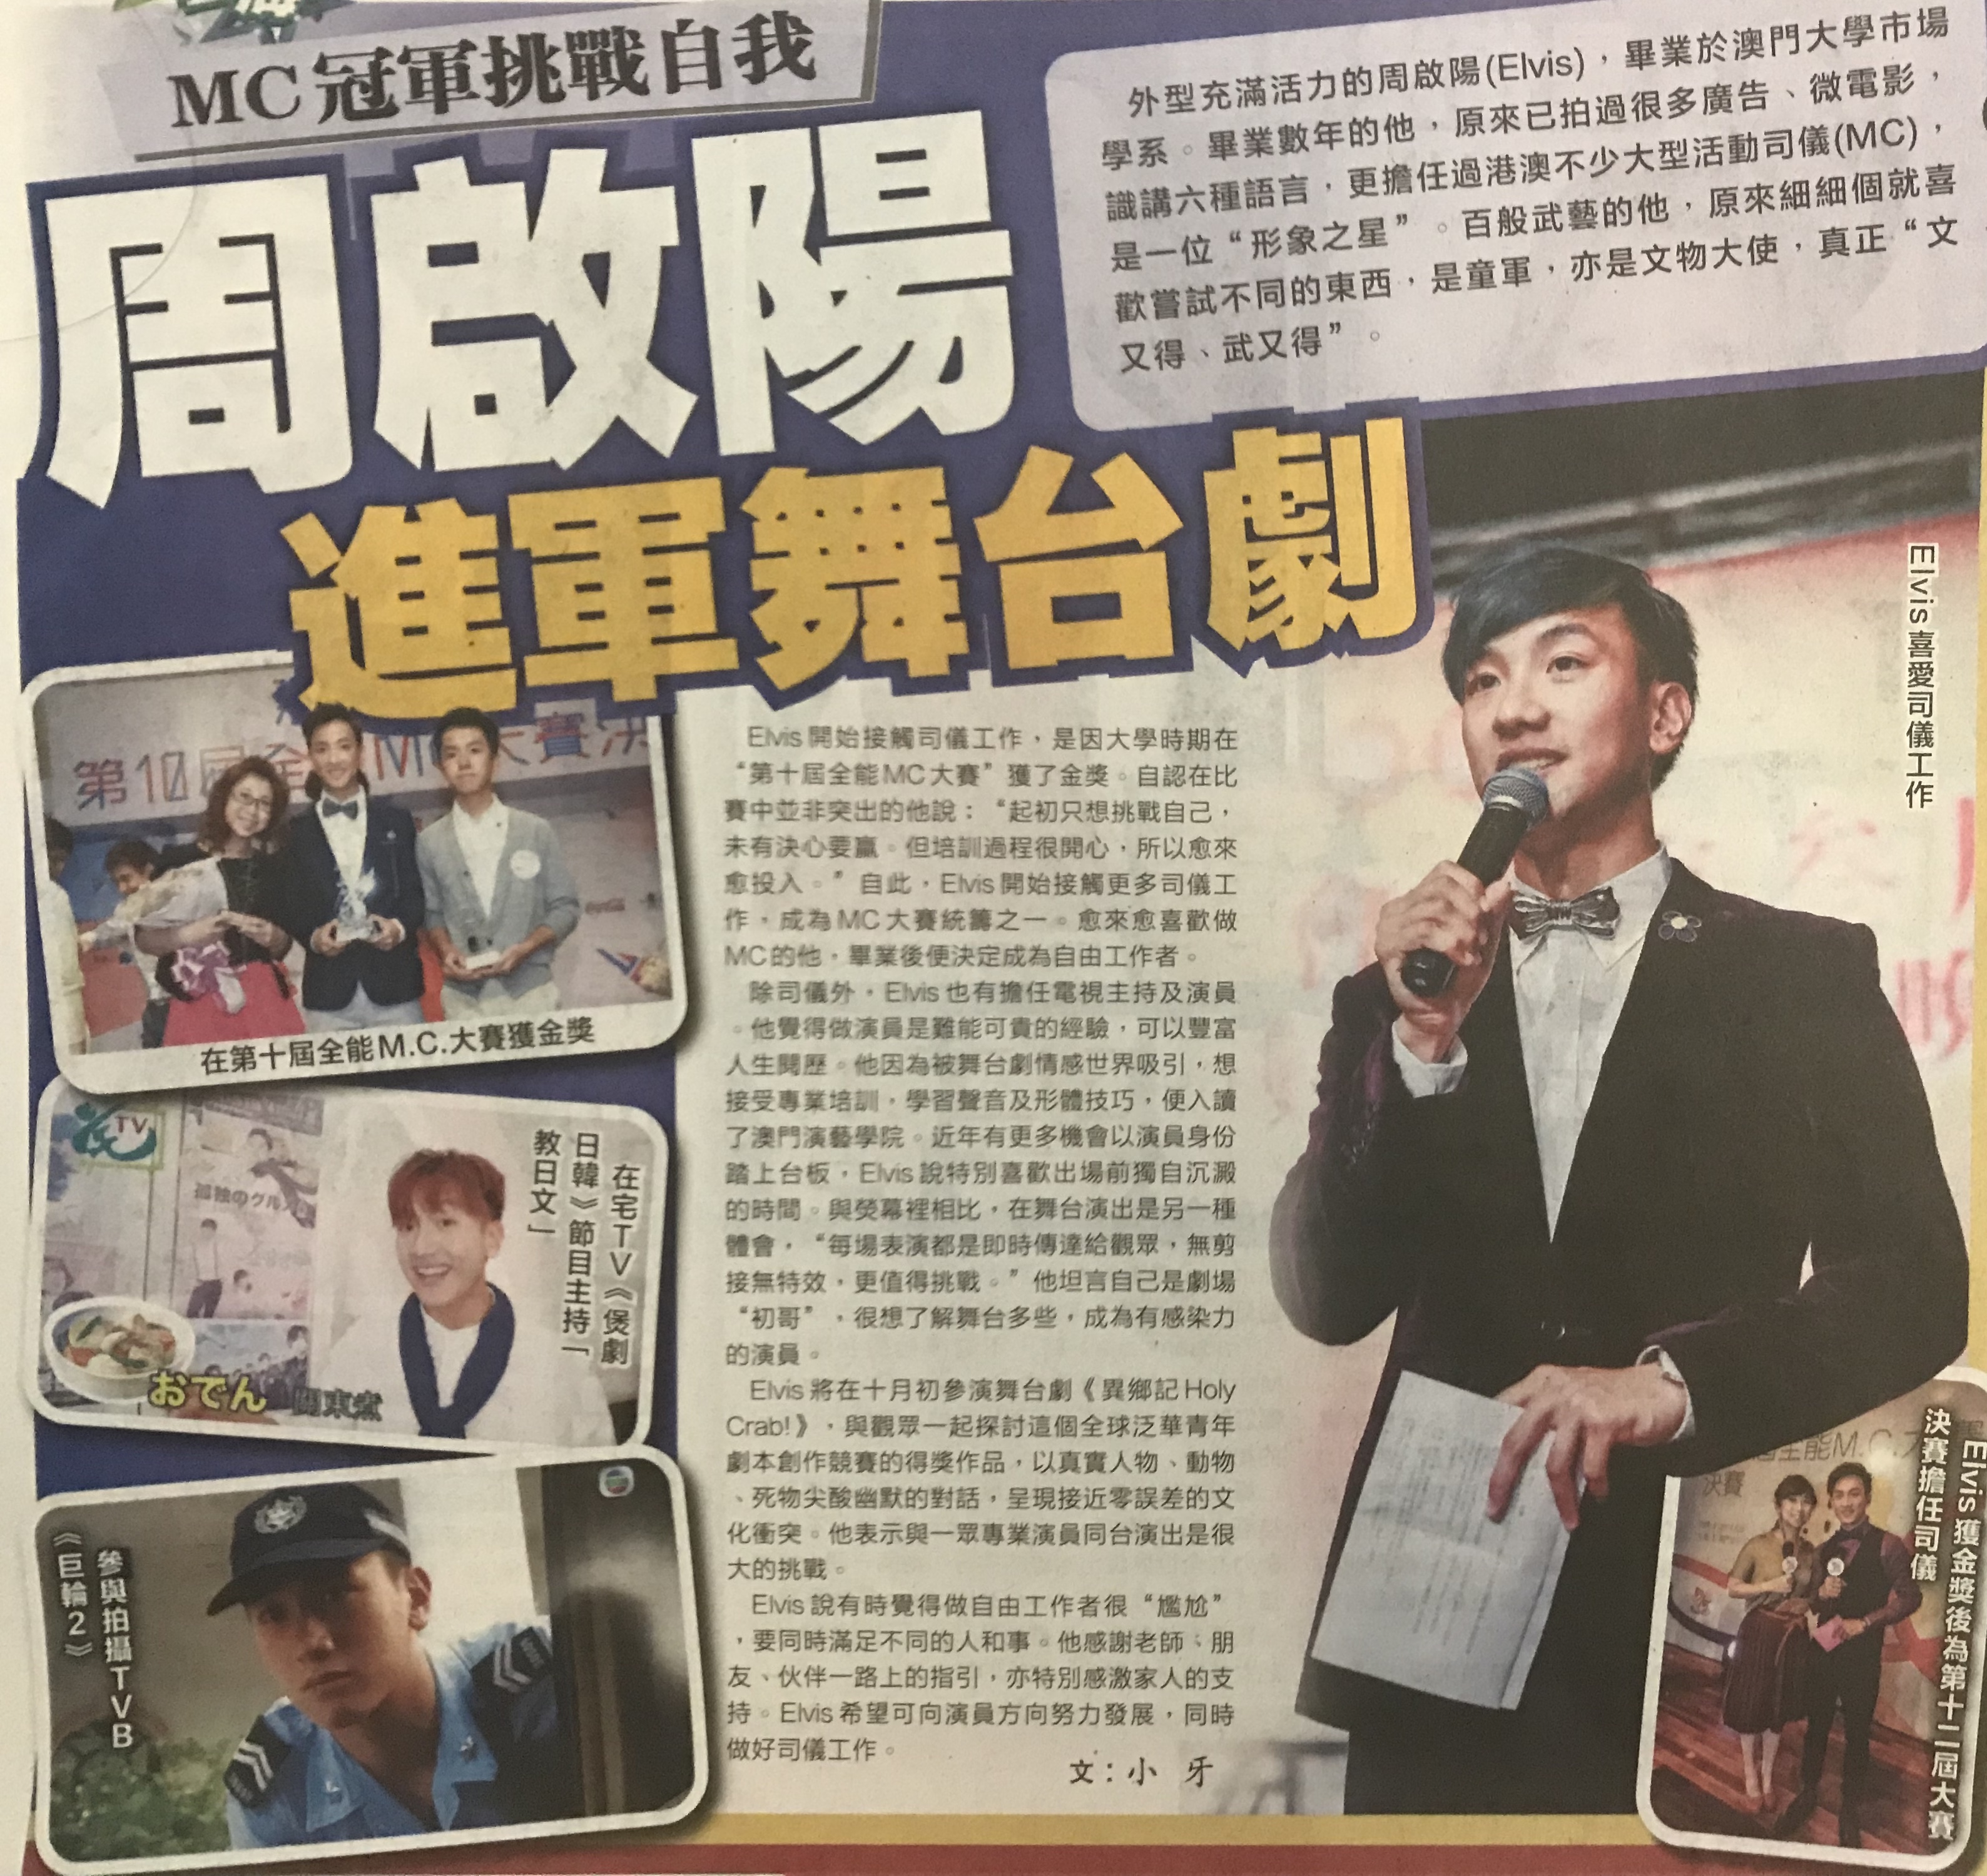 周啓陽 Elvis Chao 司儀傳媒報導: MC冠軍挑戰自我